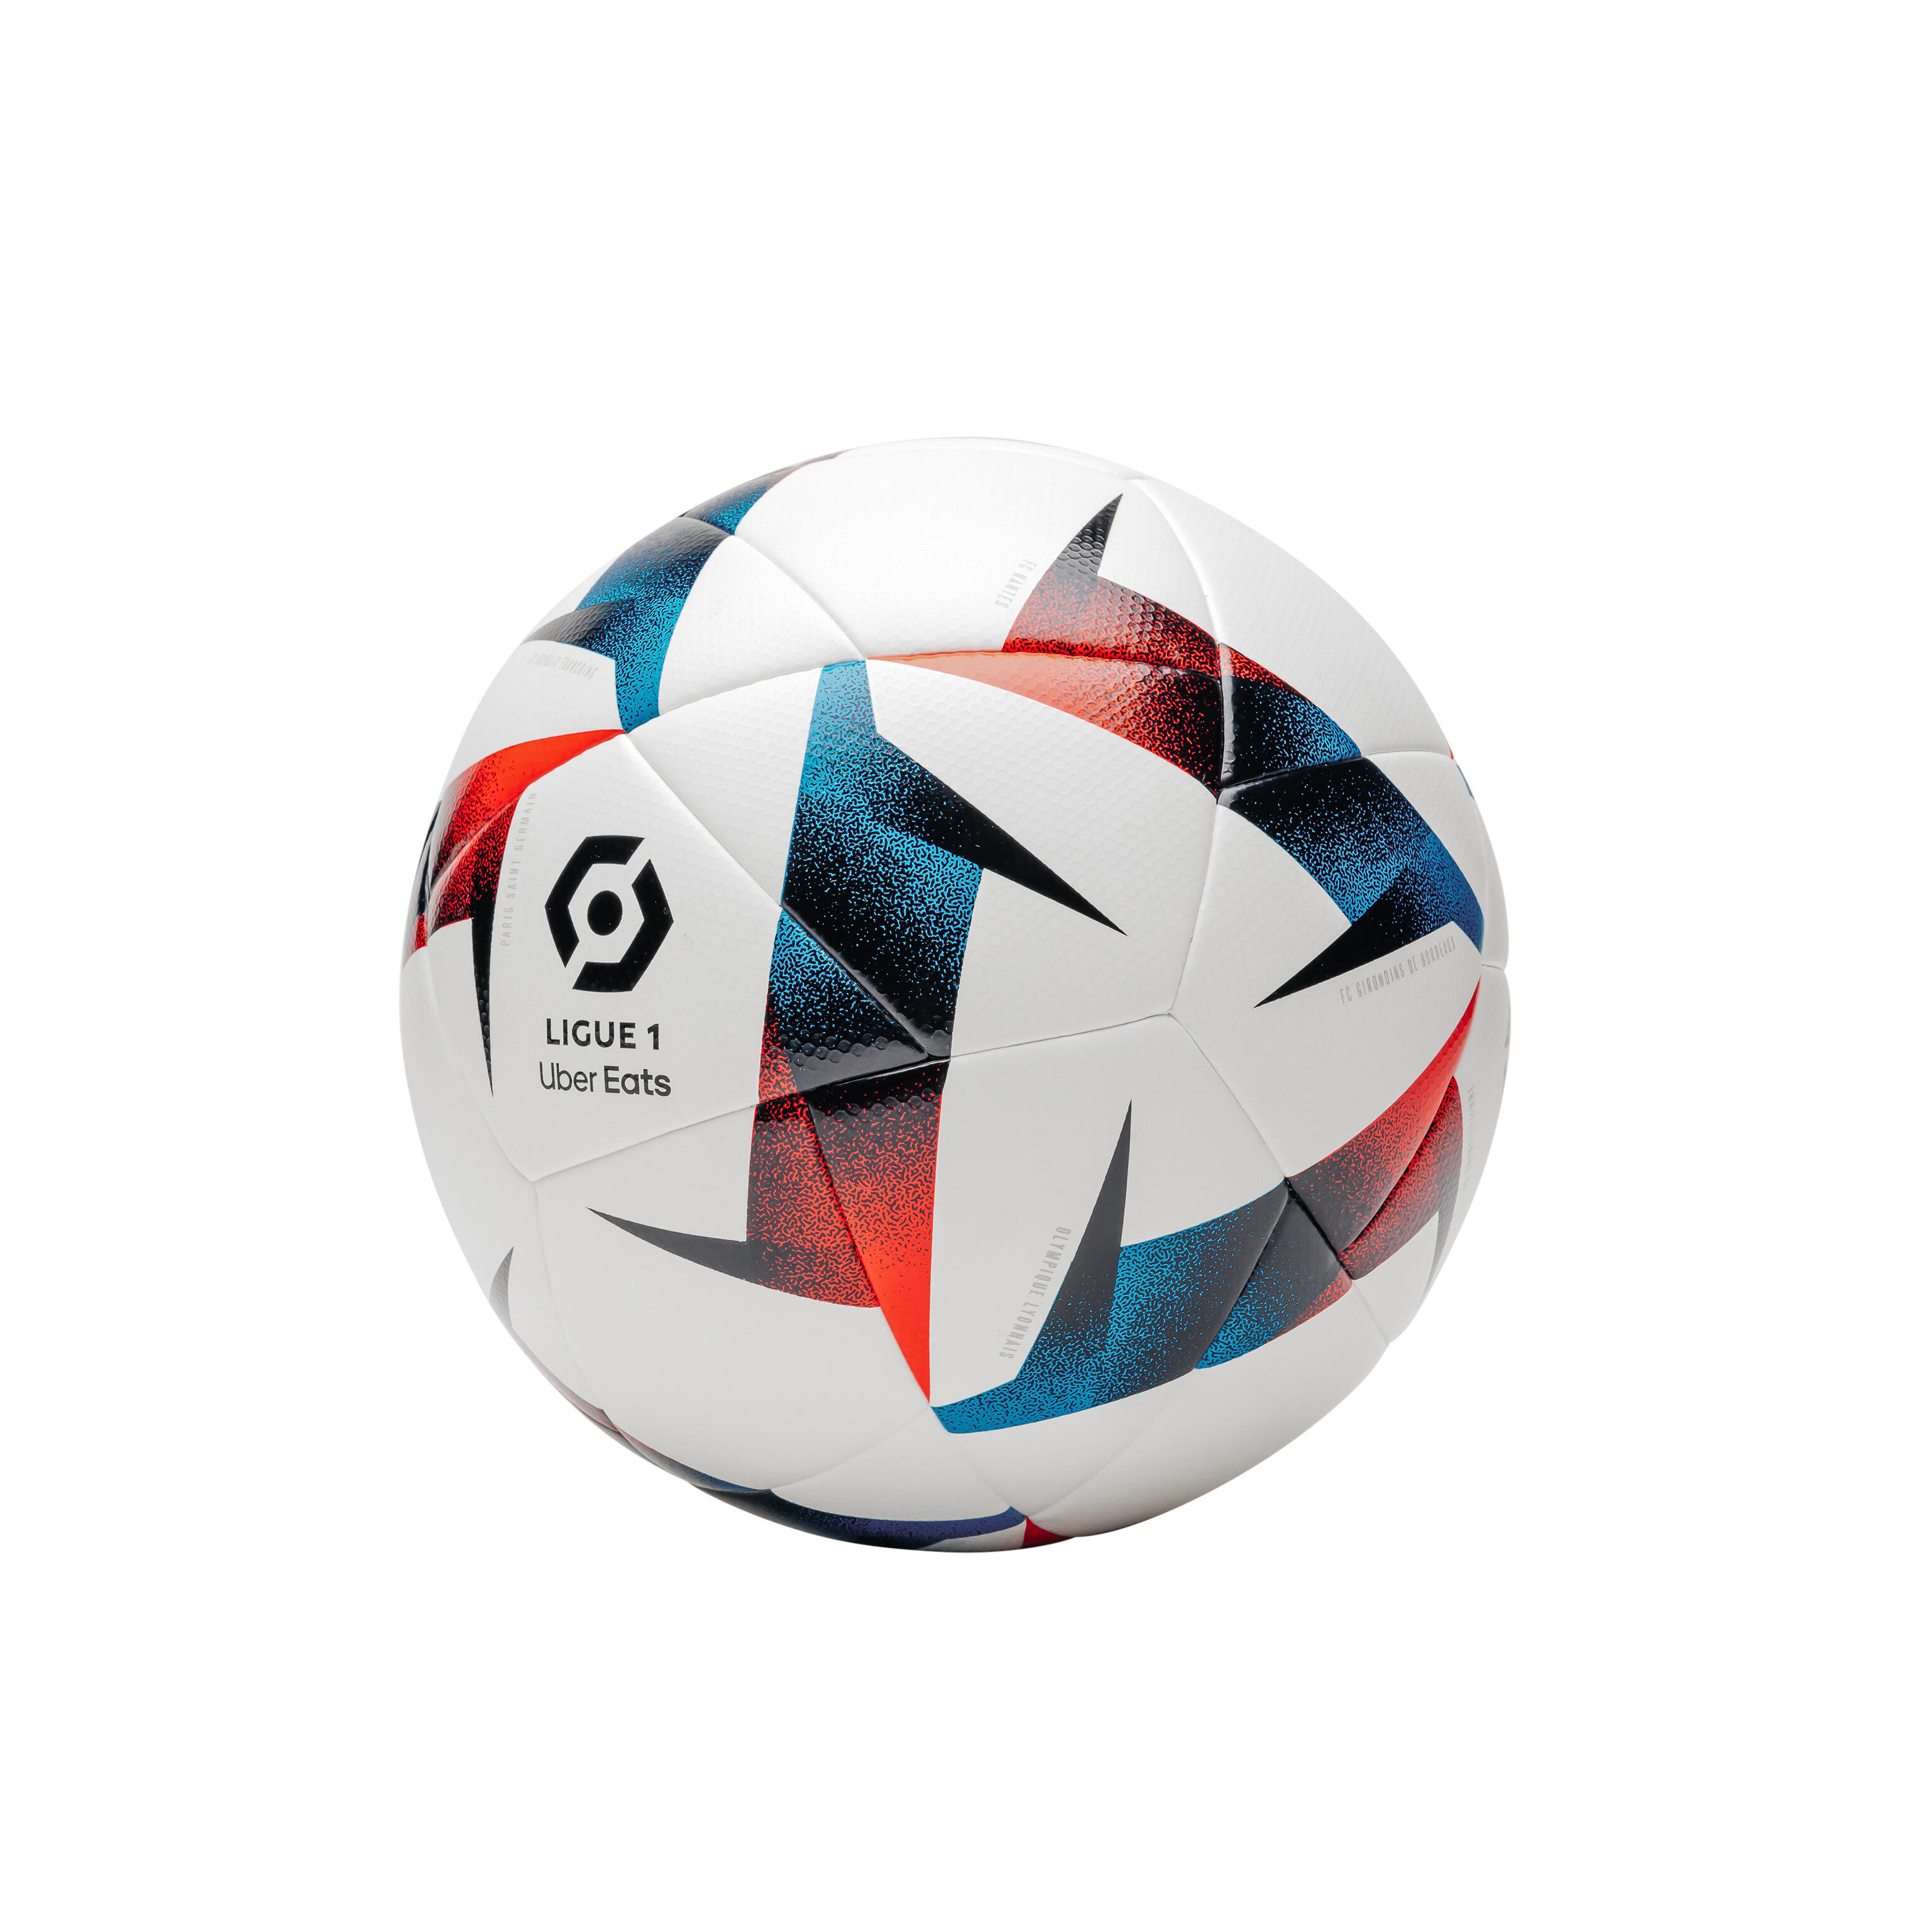 Cinco tipos de balones y pelotas para practicar fútbol, rugby o tenis, Escaparate: compras y ofertas